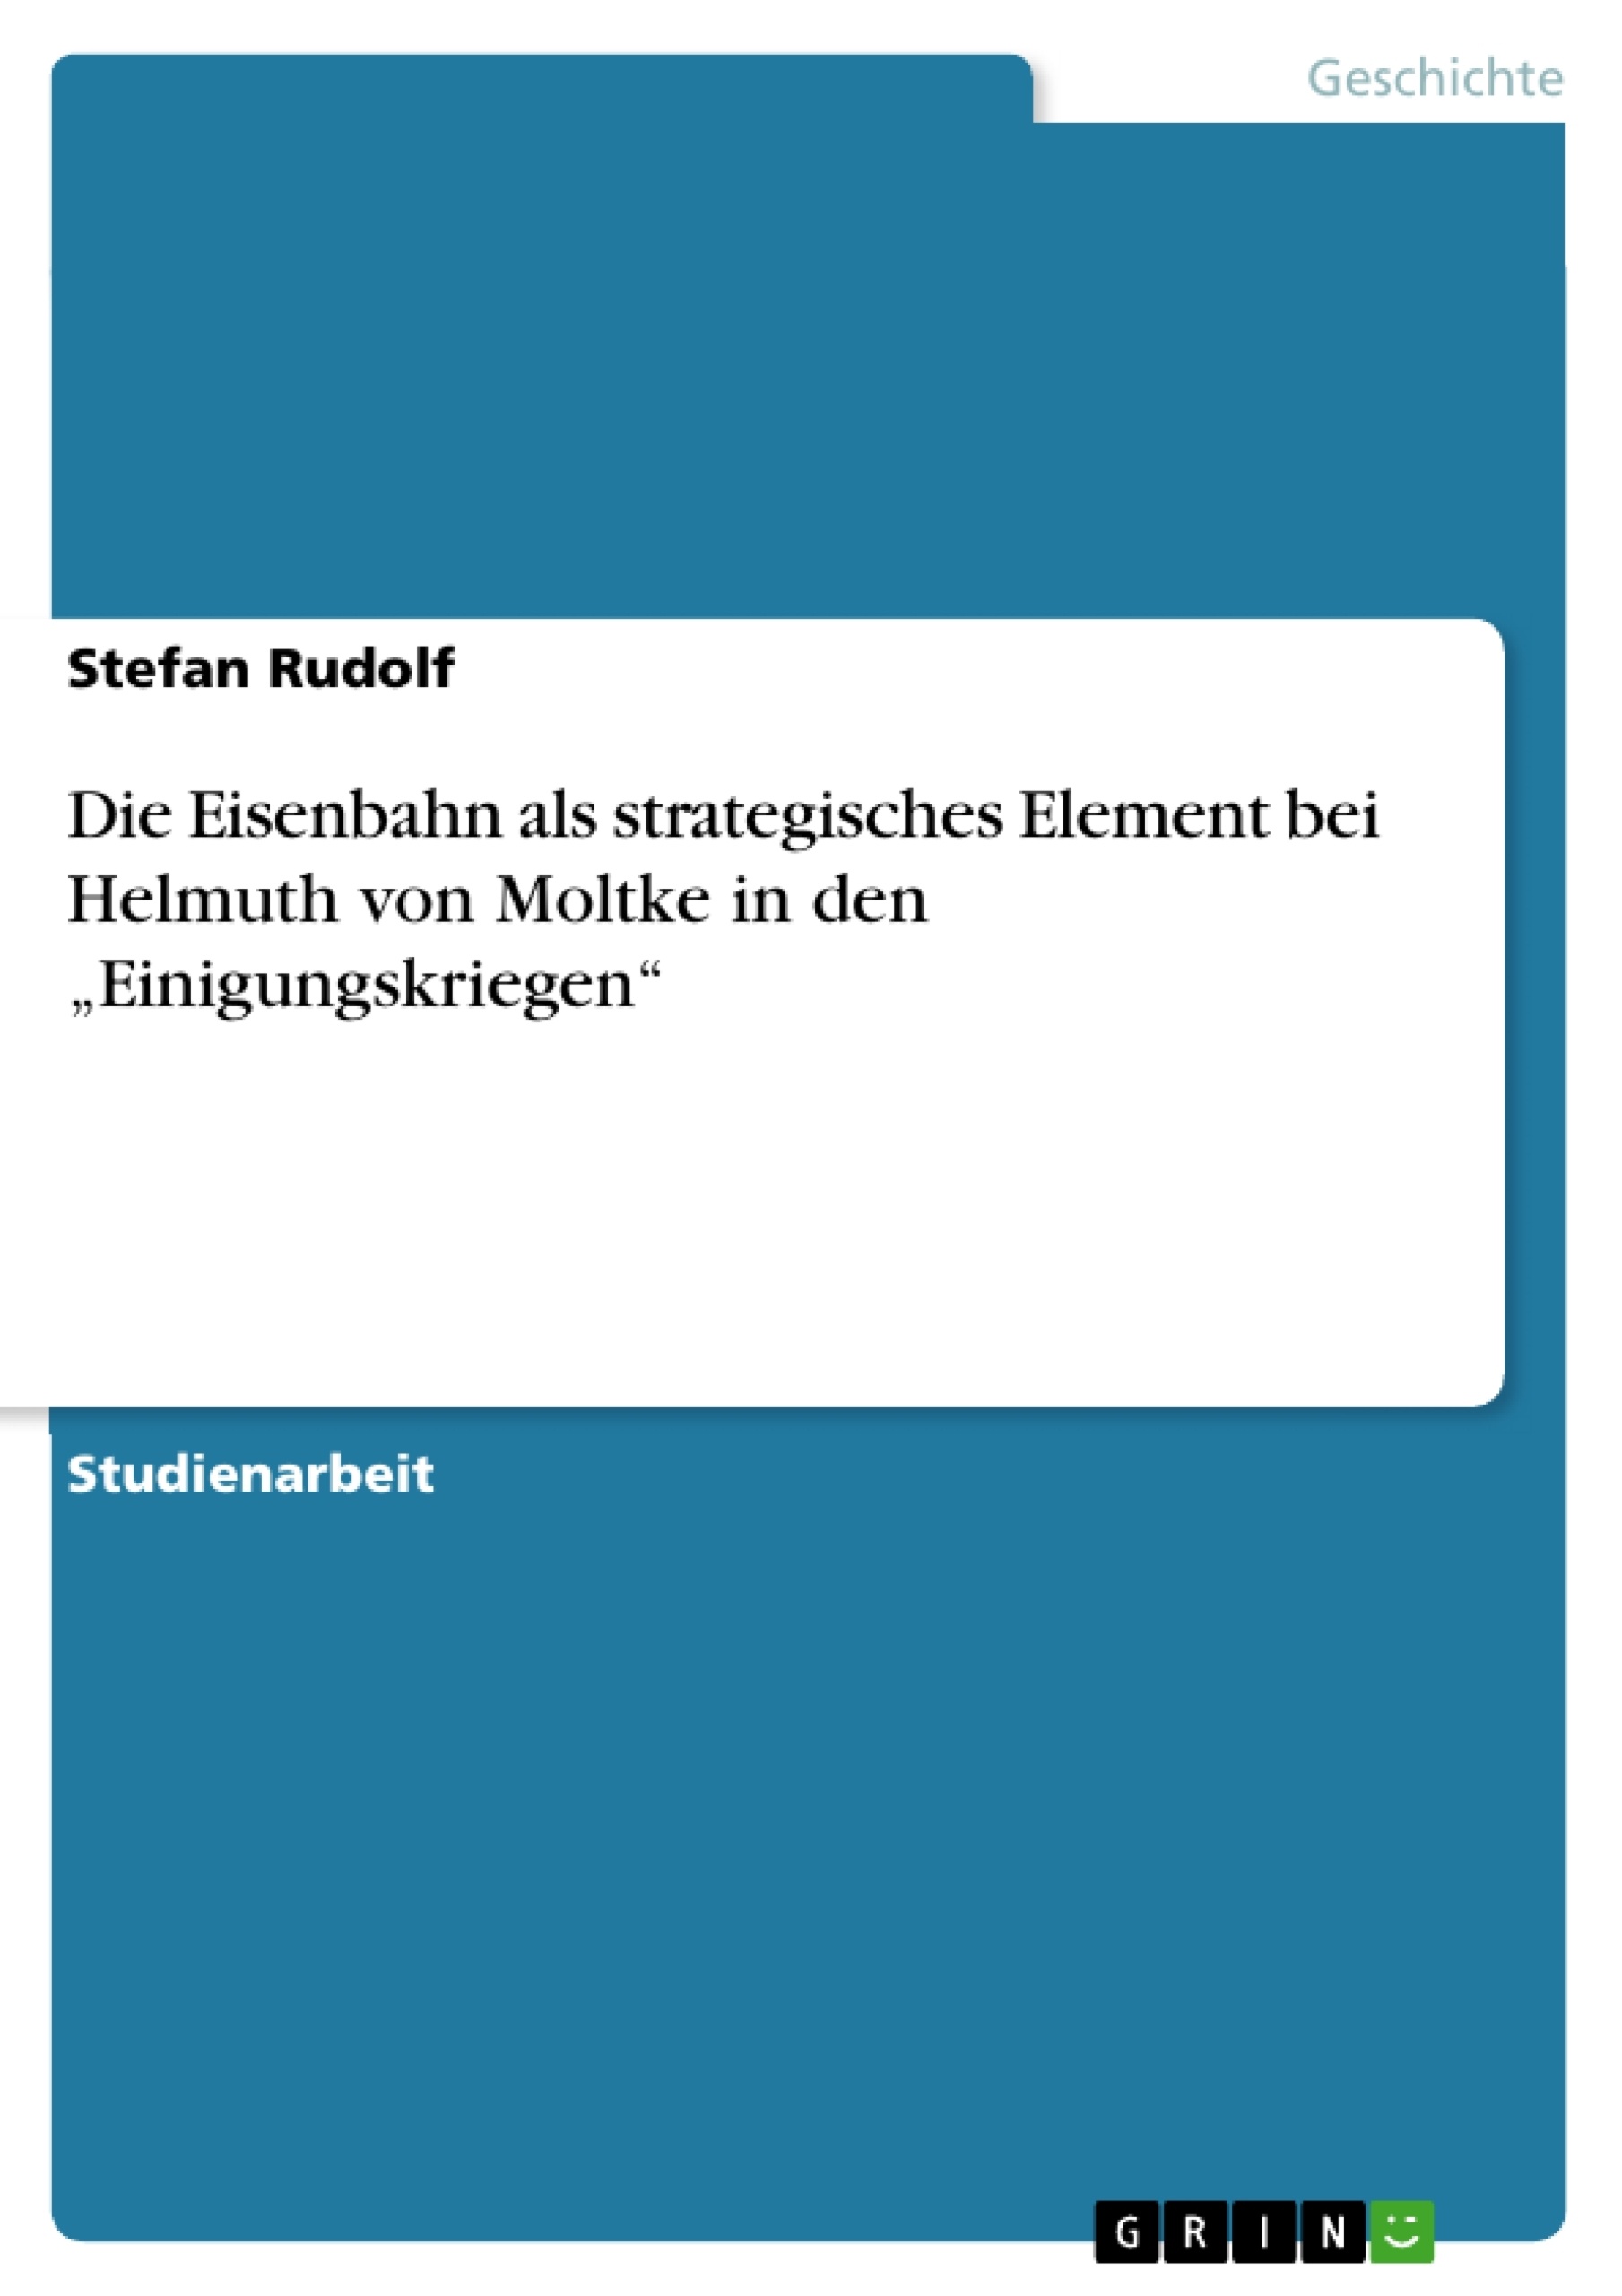 Title: Die Eisenbahn als strategisches Element bei Helmuth von Moltke in den „Einigungskriegen“